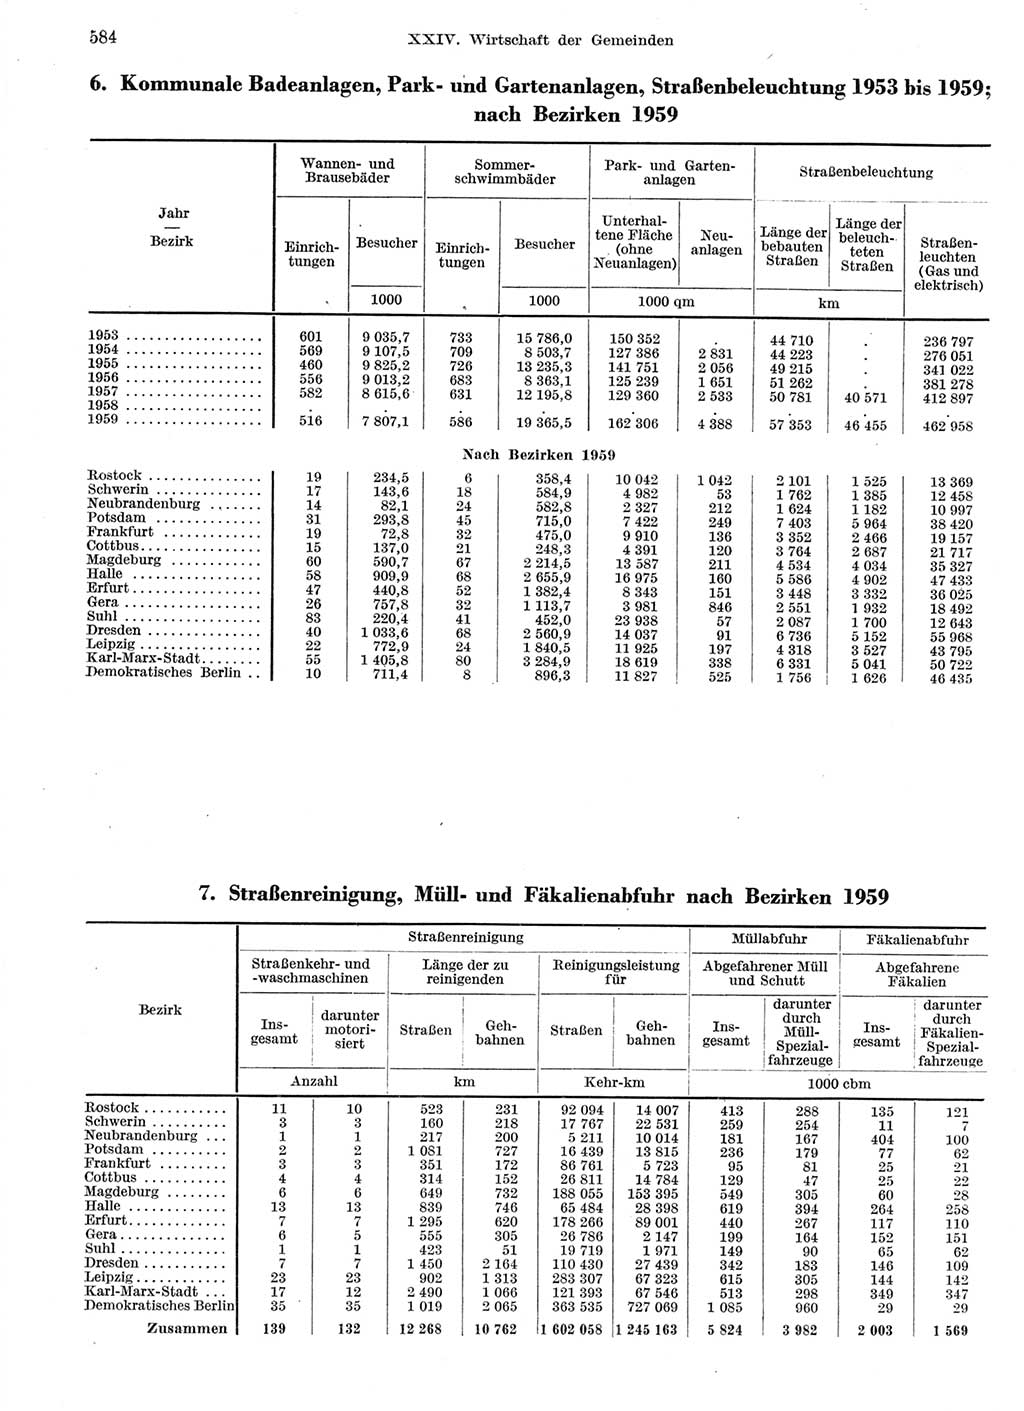 Statistisches Jahrbuch der Deutschen Demokratischen Republik (DDR) 1959, Seite 584 (Stat. Jb. DDR 1959, S. 584)